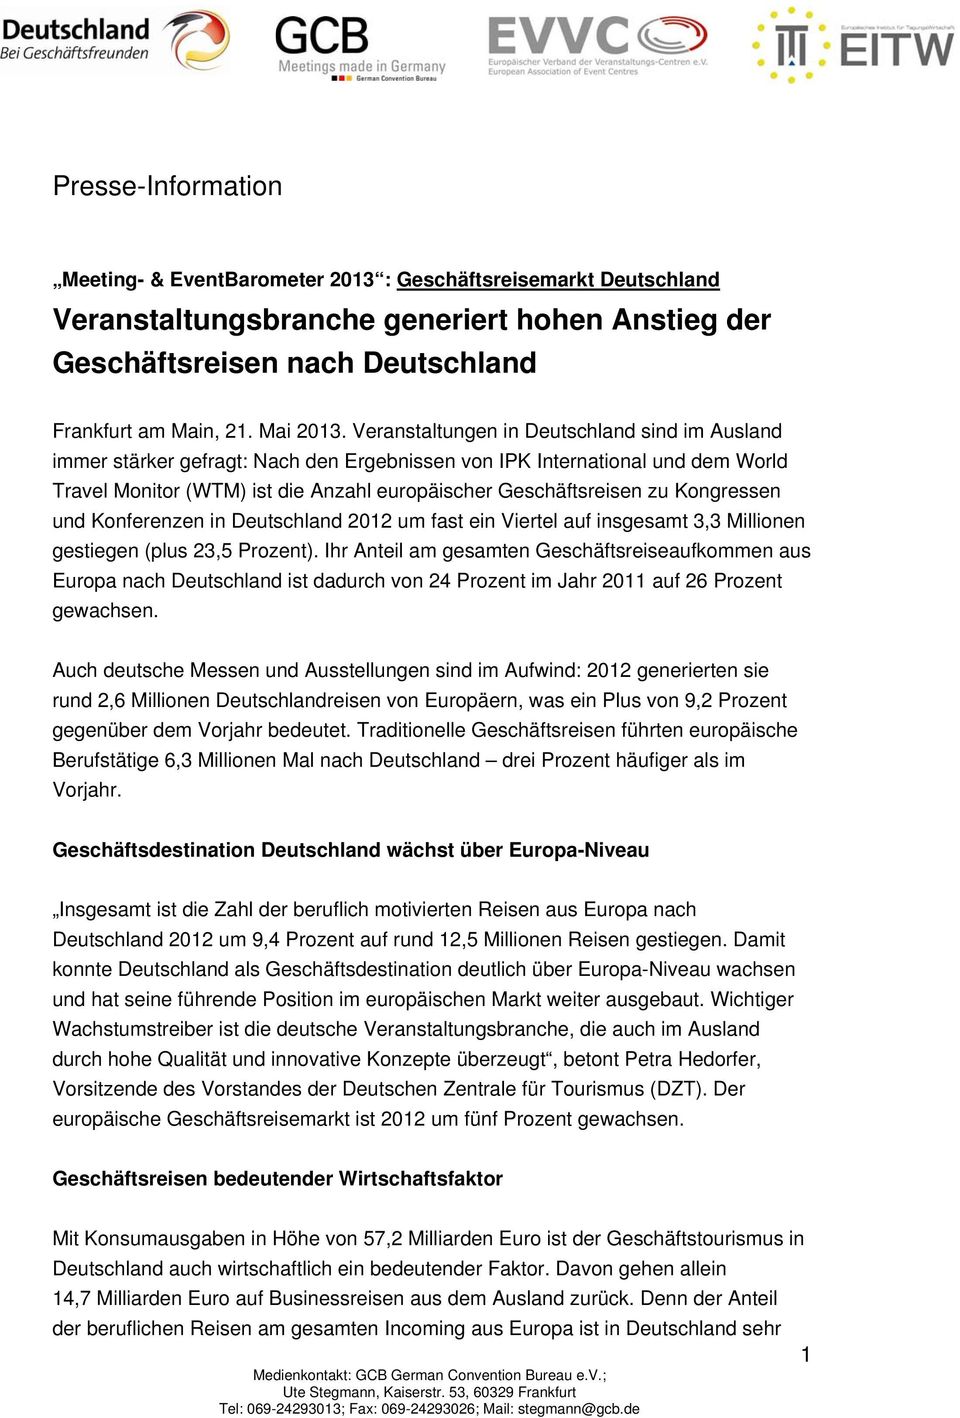 Kongressen und Konferenzen in Deutschland 2012 um fast ein Viertel auf insgesamt 3,3 Millionen gestiegen (plus 23,5 Prozent).